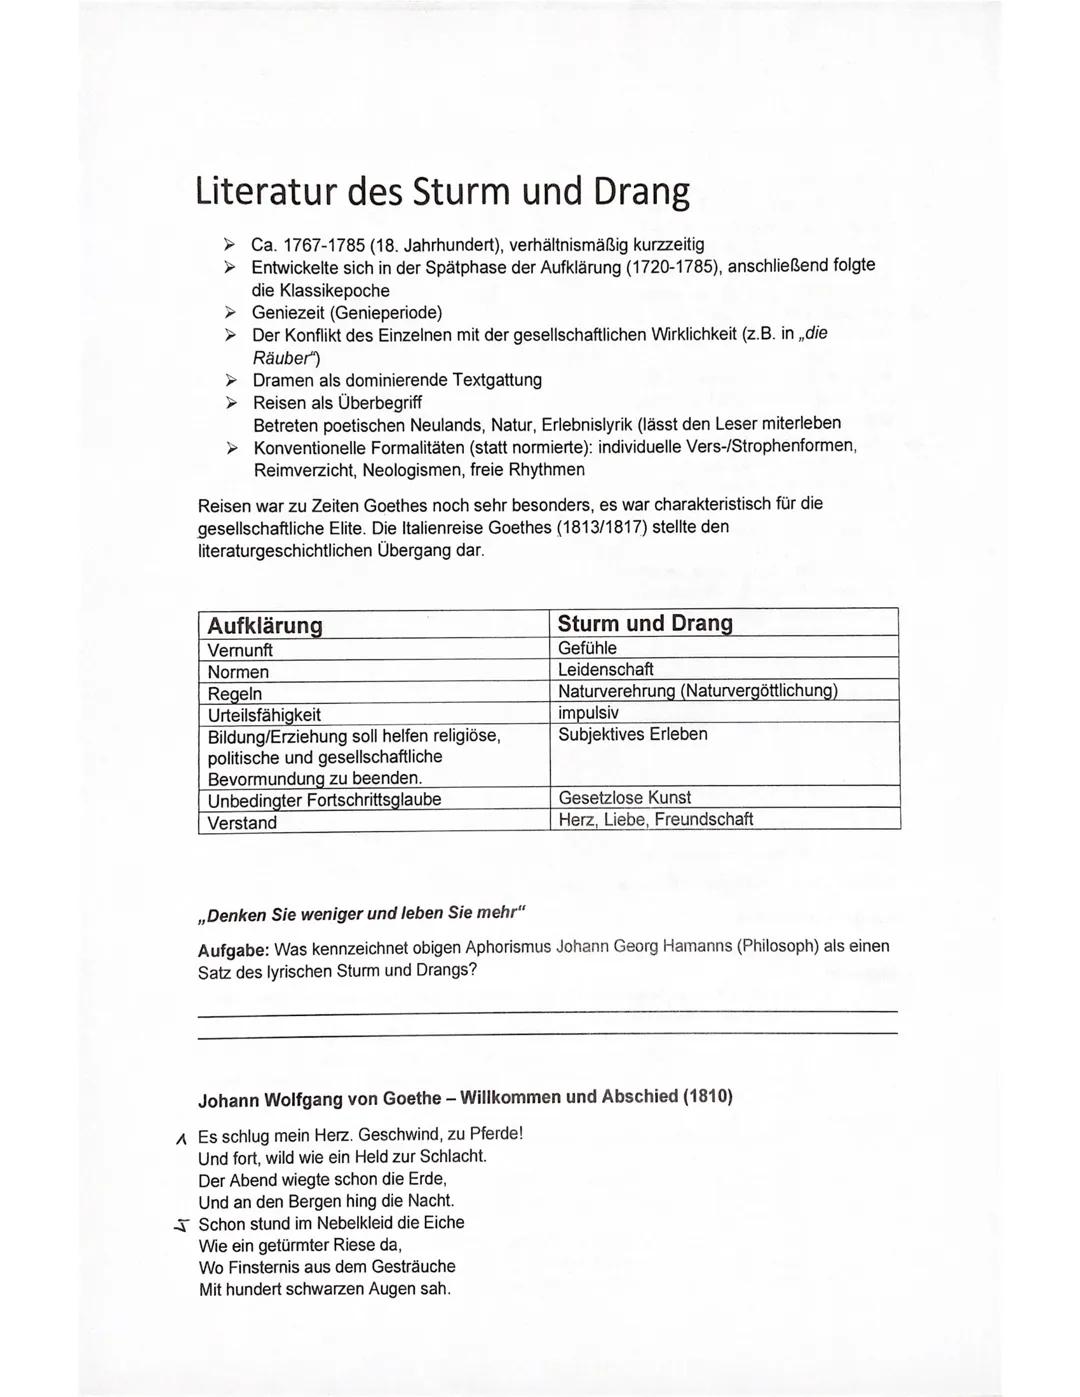 Literatur des Sturm und Drang
> Ca. 1767-1785 (18. Jahrhundert), verhältnismäßig kurzzeitig
> Entwickelte sich in der Spätphase der Aufkläru